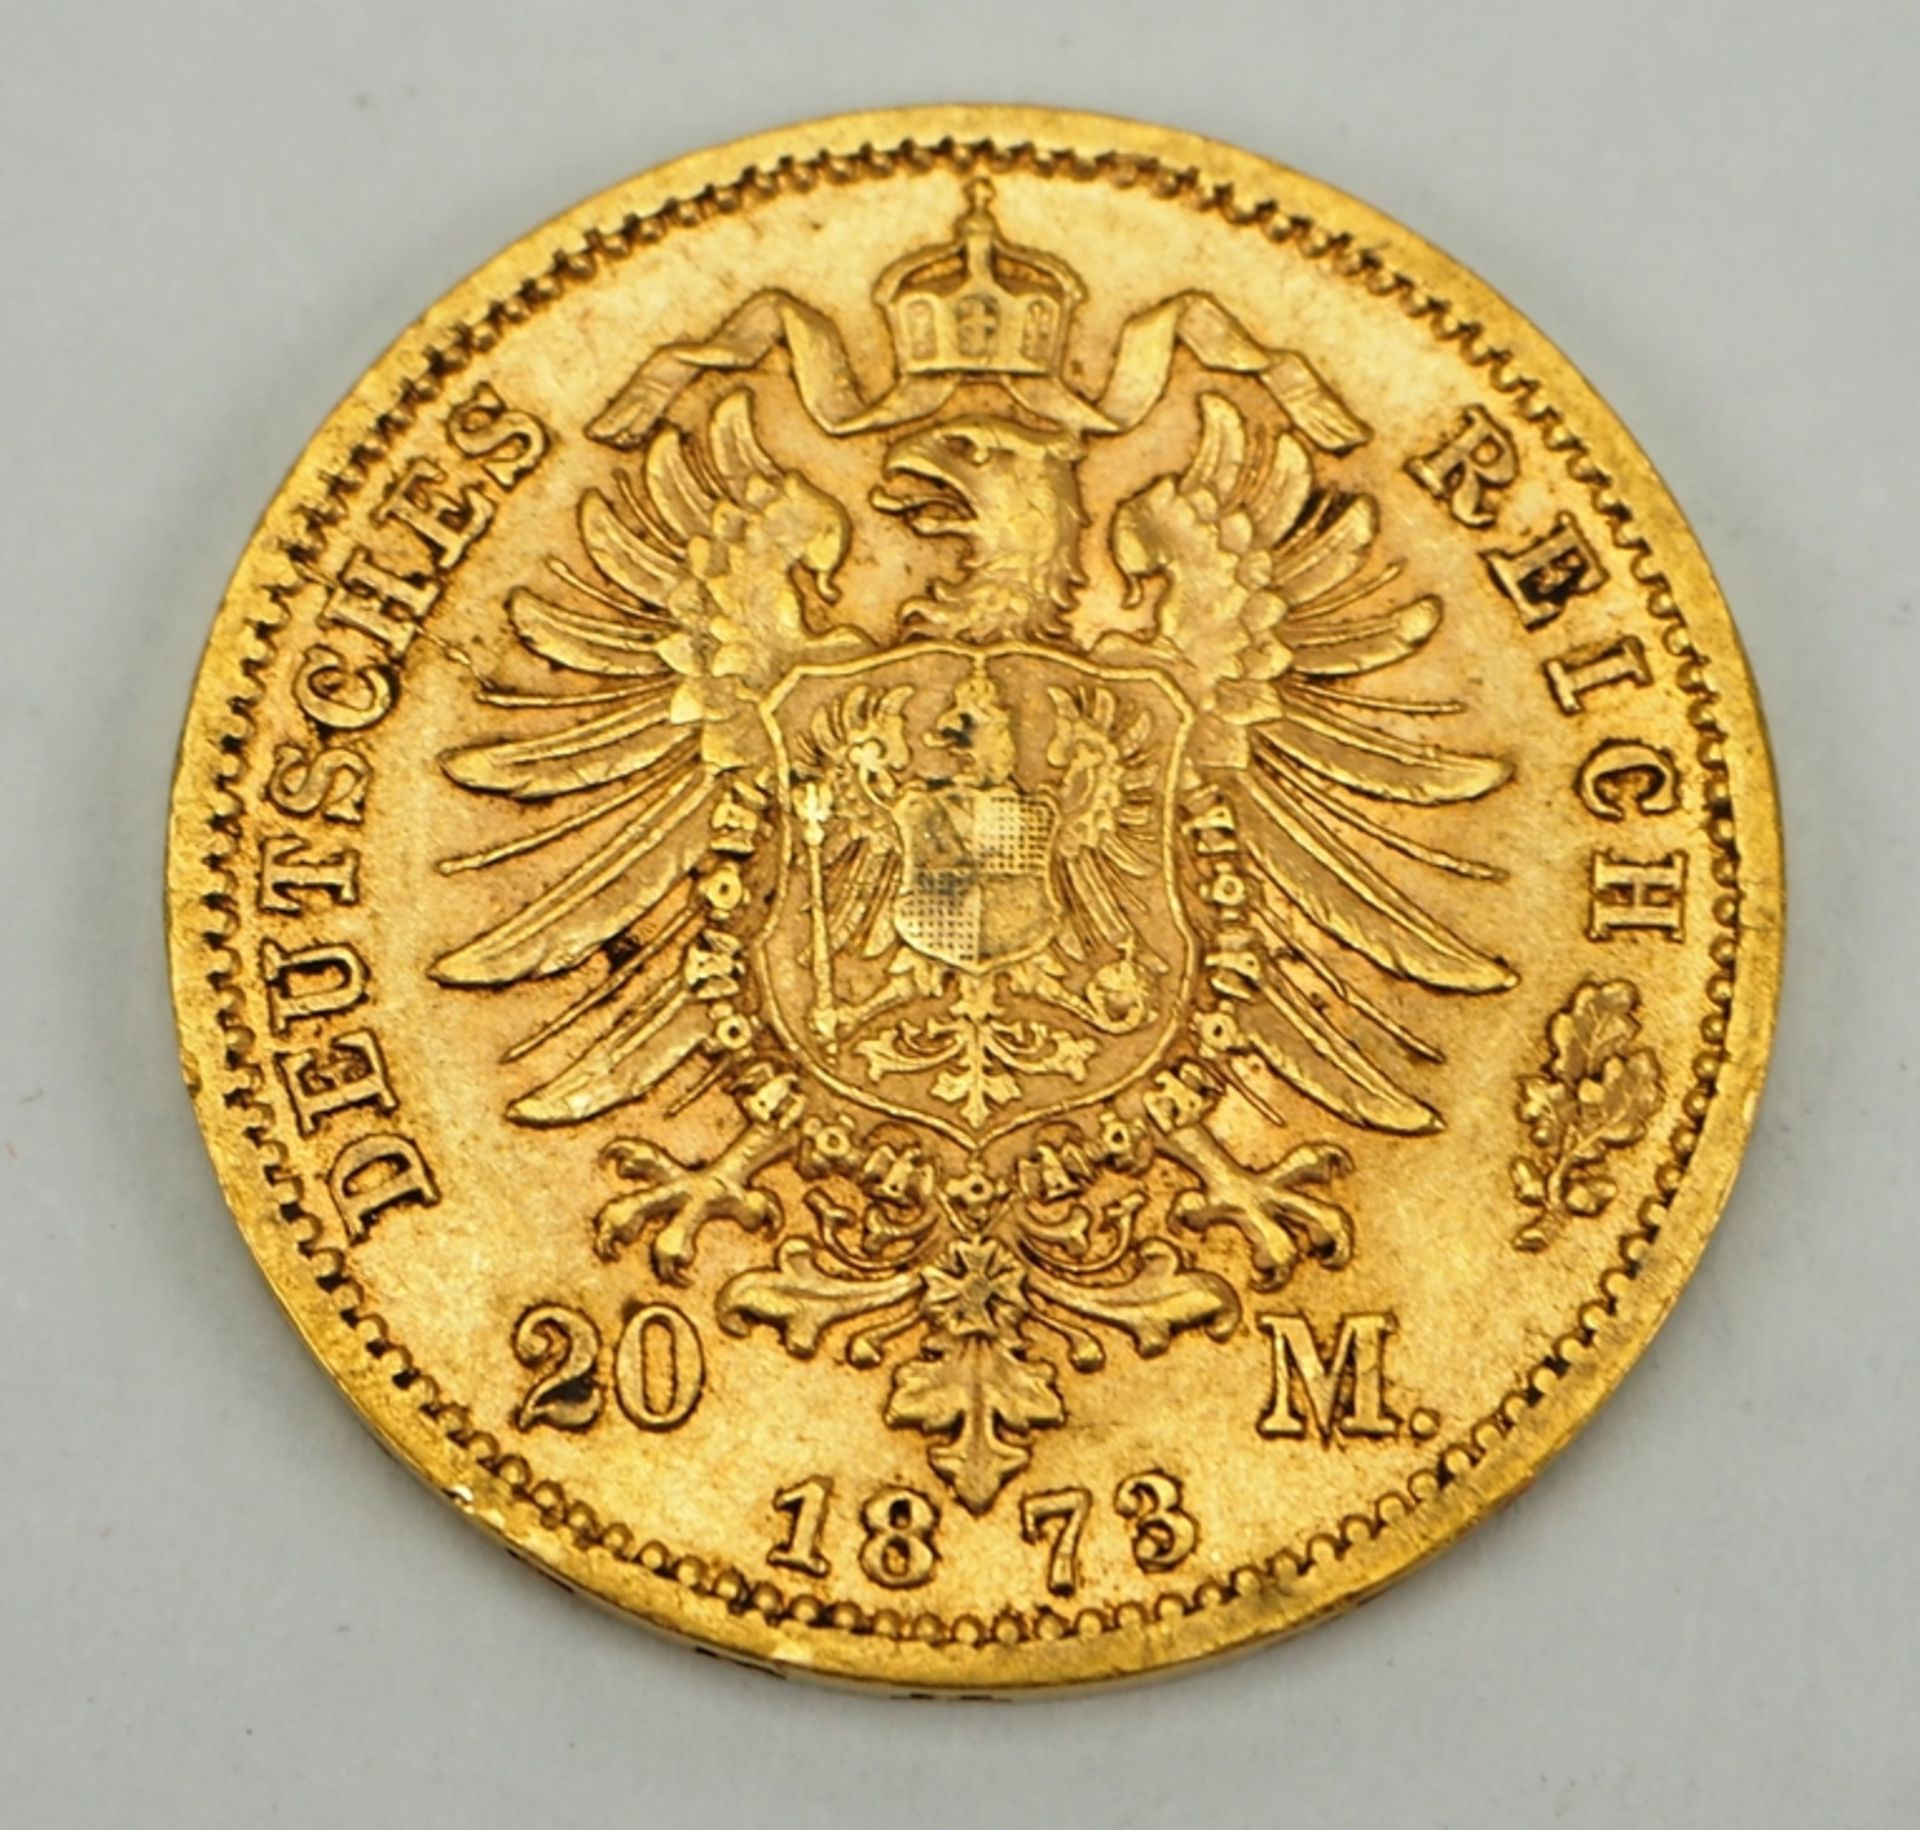 Preussen: 20 Mark, 1878. - Image 2 of 2